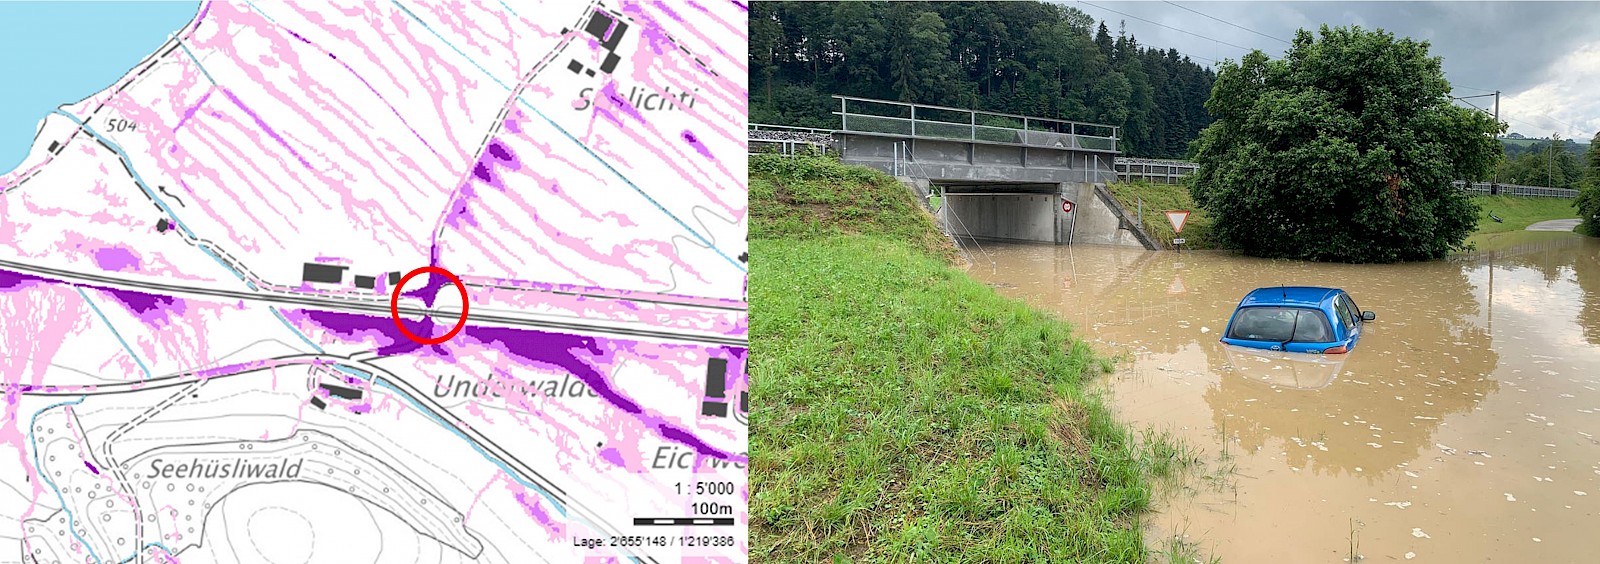 Oberflächenabfluss bei Sempach Station auf der Karte (links) und in Realität am 02.07.2020 (rechts) © links: Geoinformation Kanton Luzern, rechts: Luzerner Polizei, Luzerner Zeitung